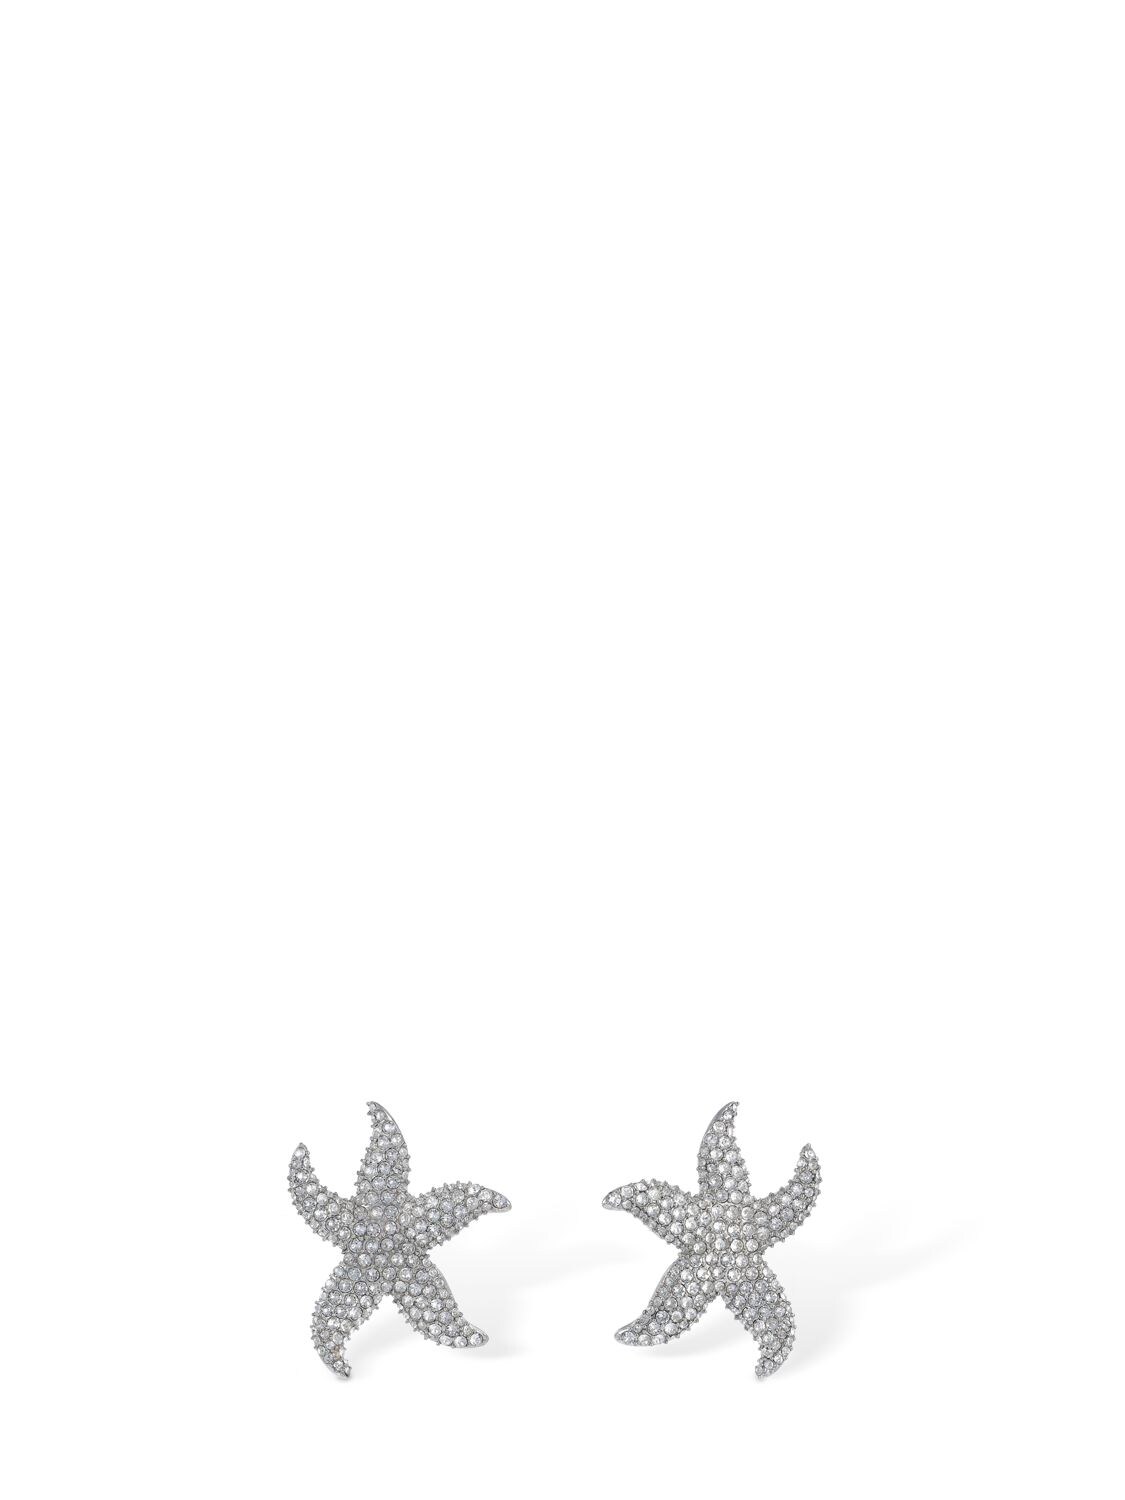 AMINA MUADDI Astra Crystal Stud Earrings